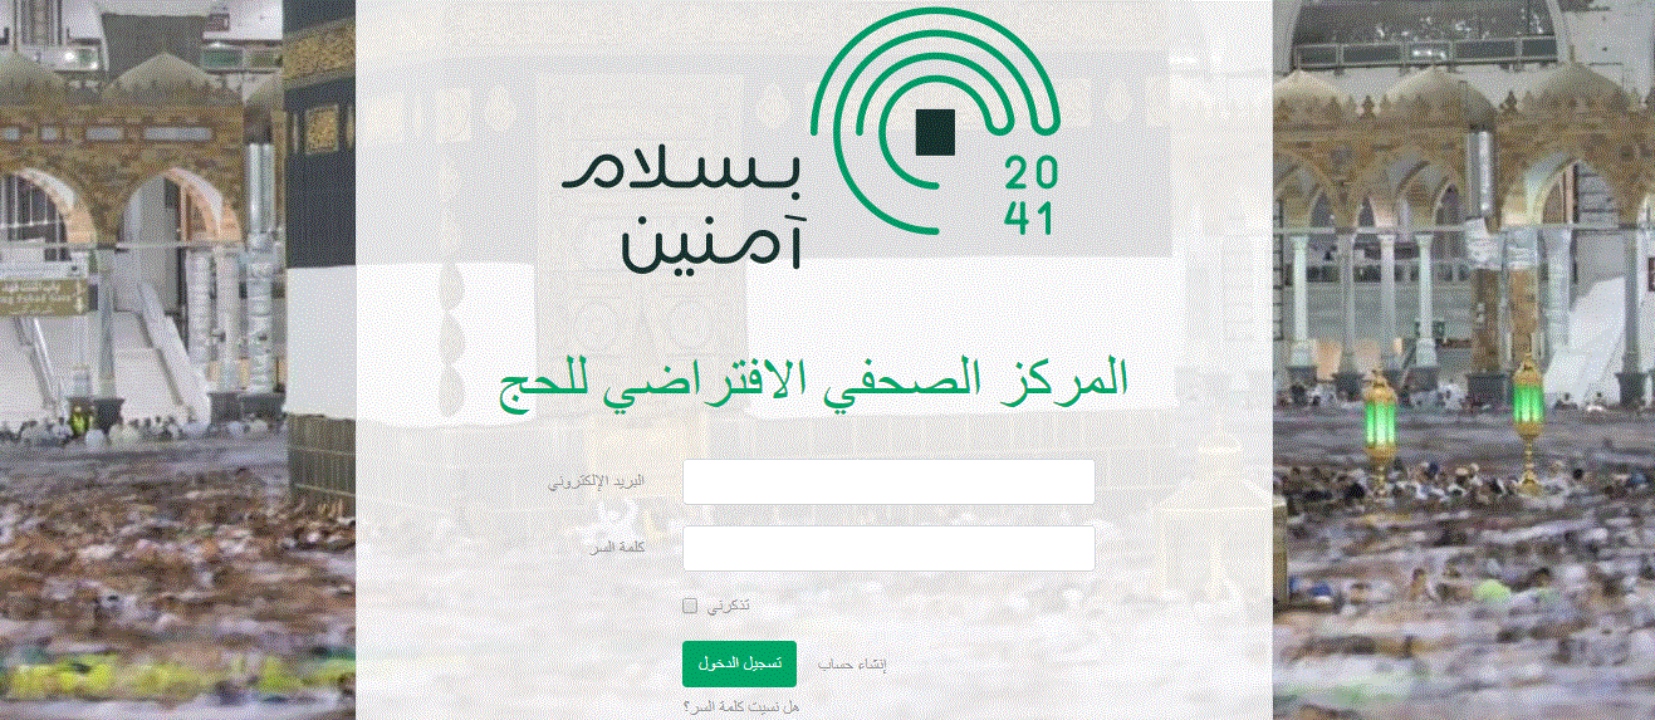 أخبار السعودية| وزارة الإعلام تطلق خدمة رقمية لتغطية موسم الحج لهذا العام من داخل المملكة وفي جميع أنحاء العالم